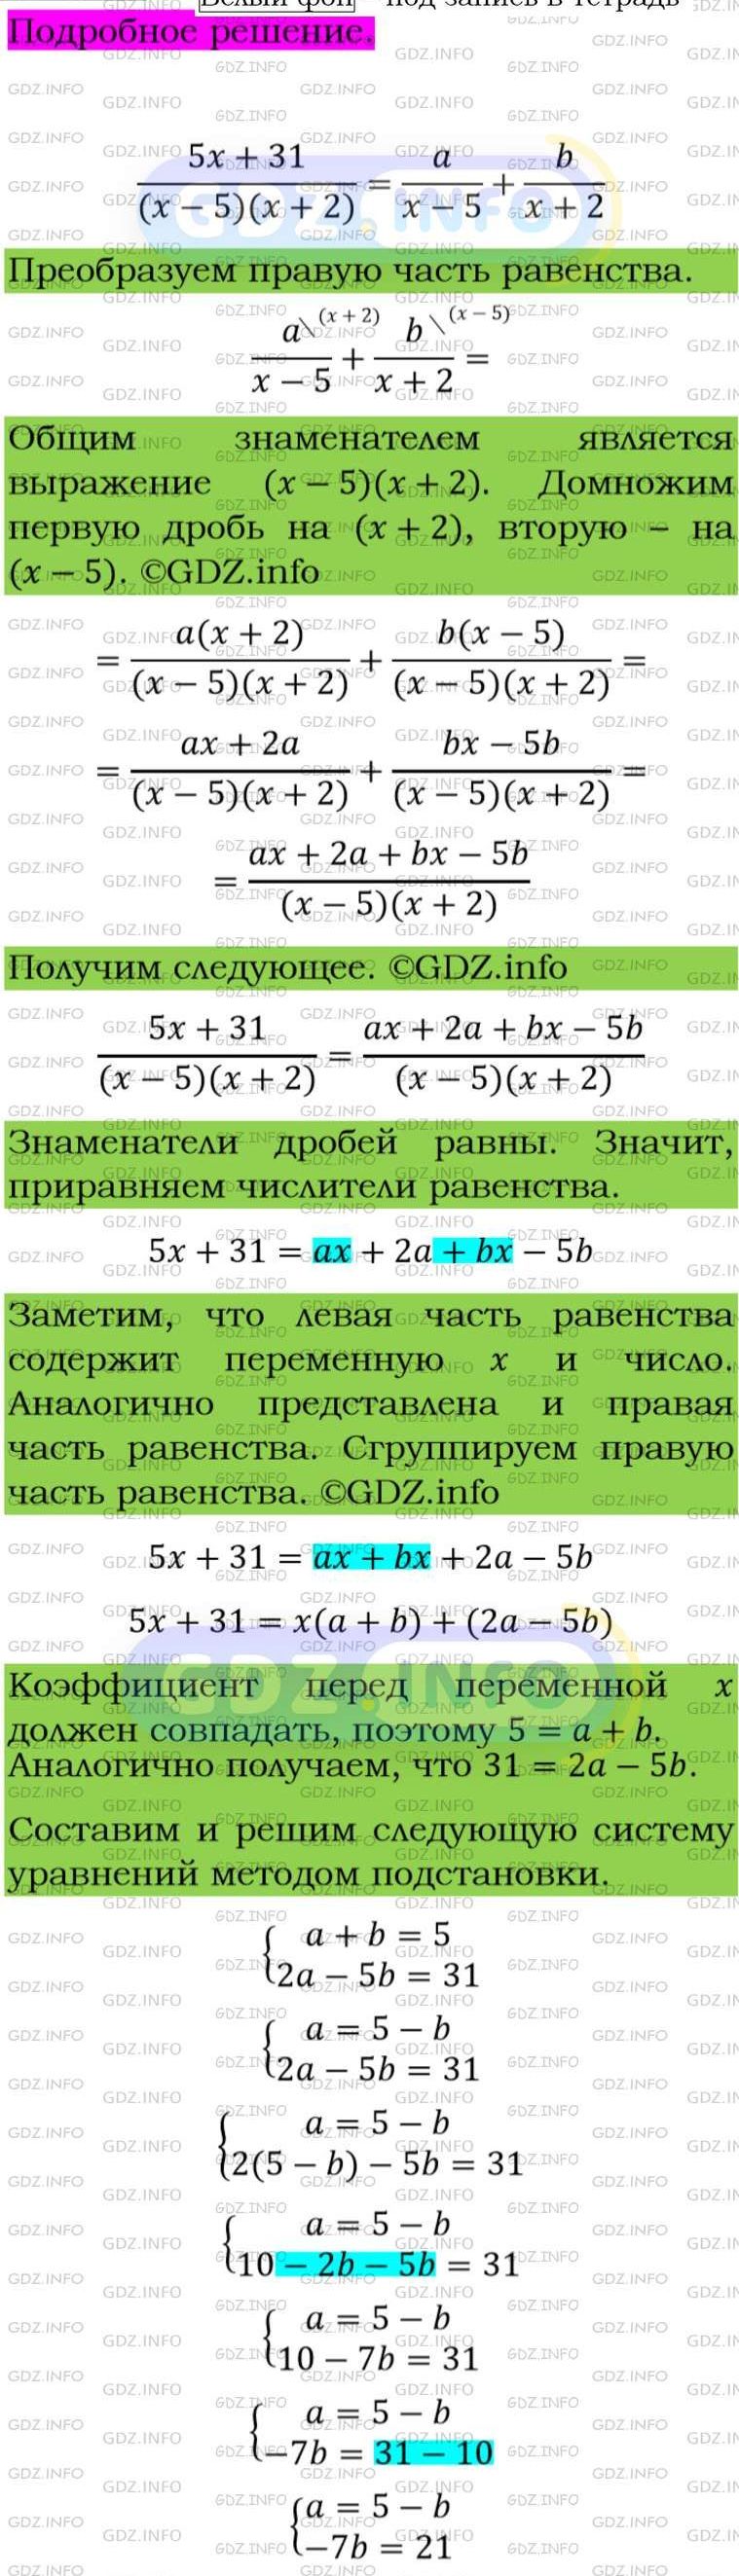 Фото подробного решения: Номер задания №199 из ГДЗ по Алгебре 8 класс: Макарычев Ю.Н.